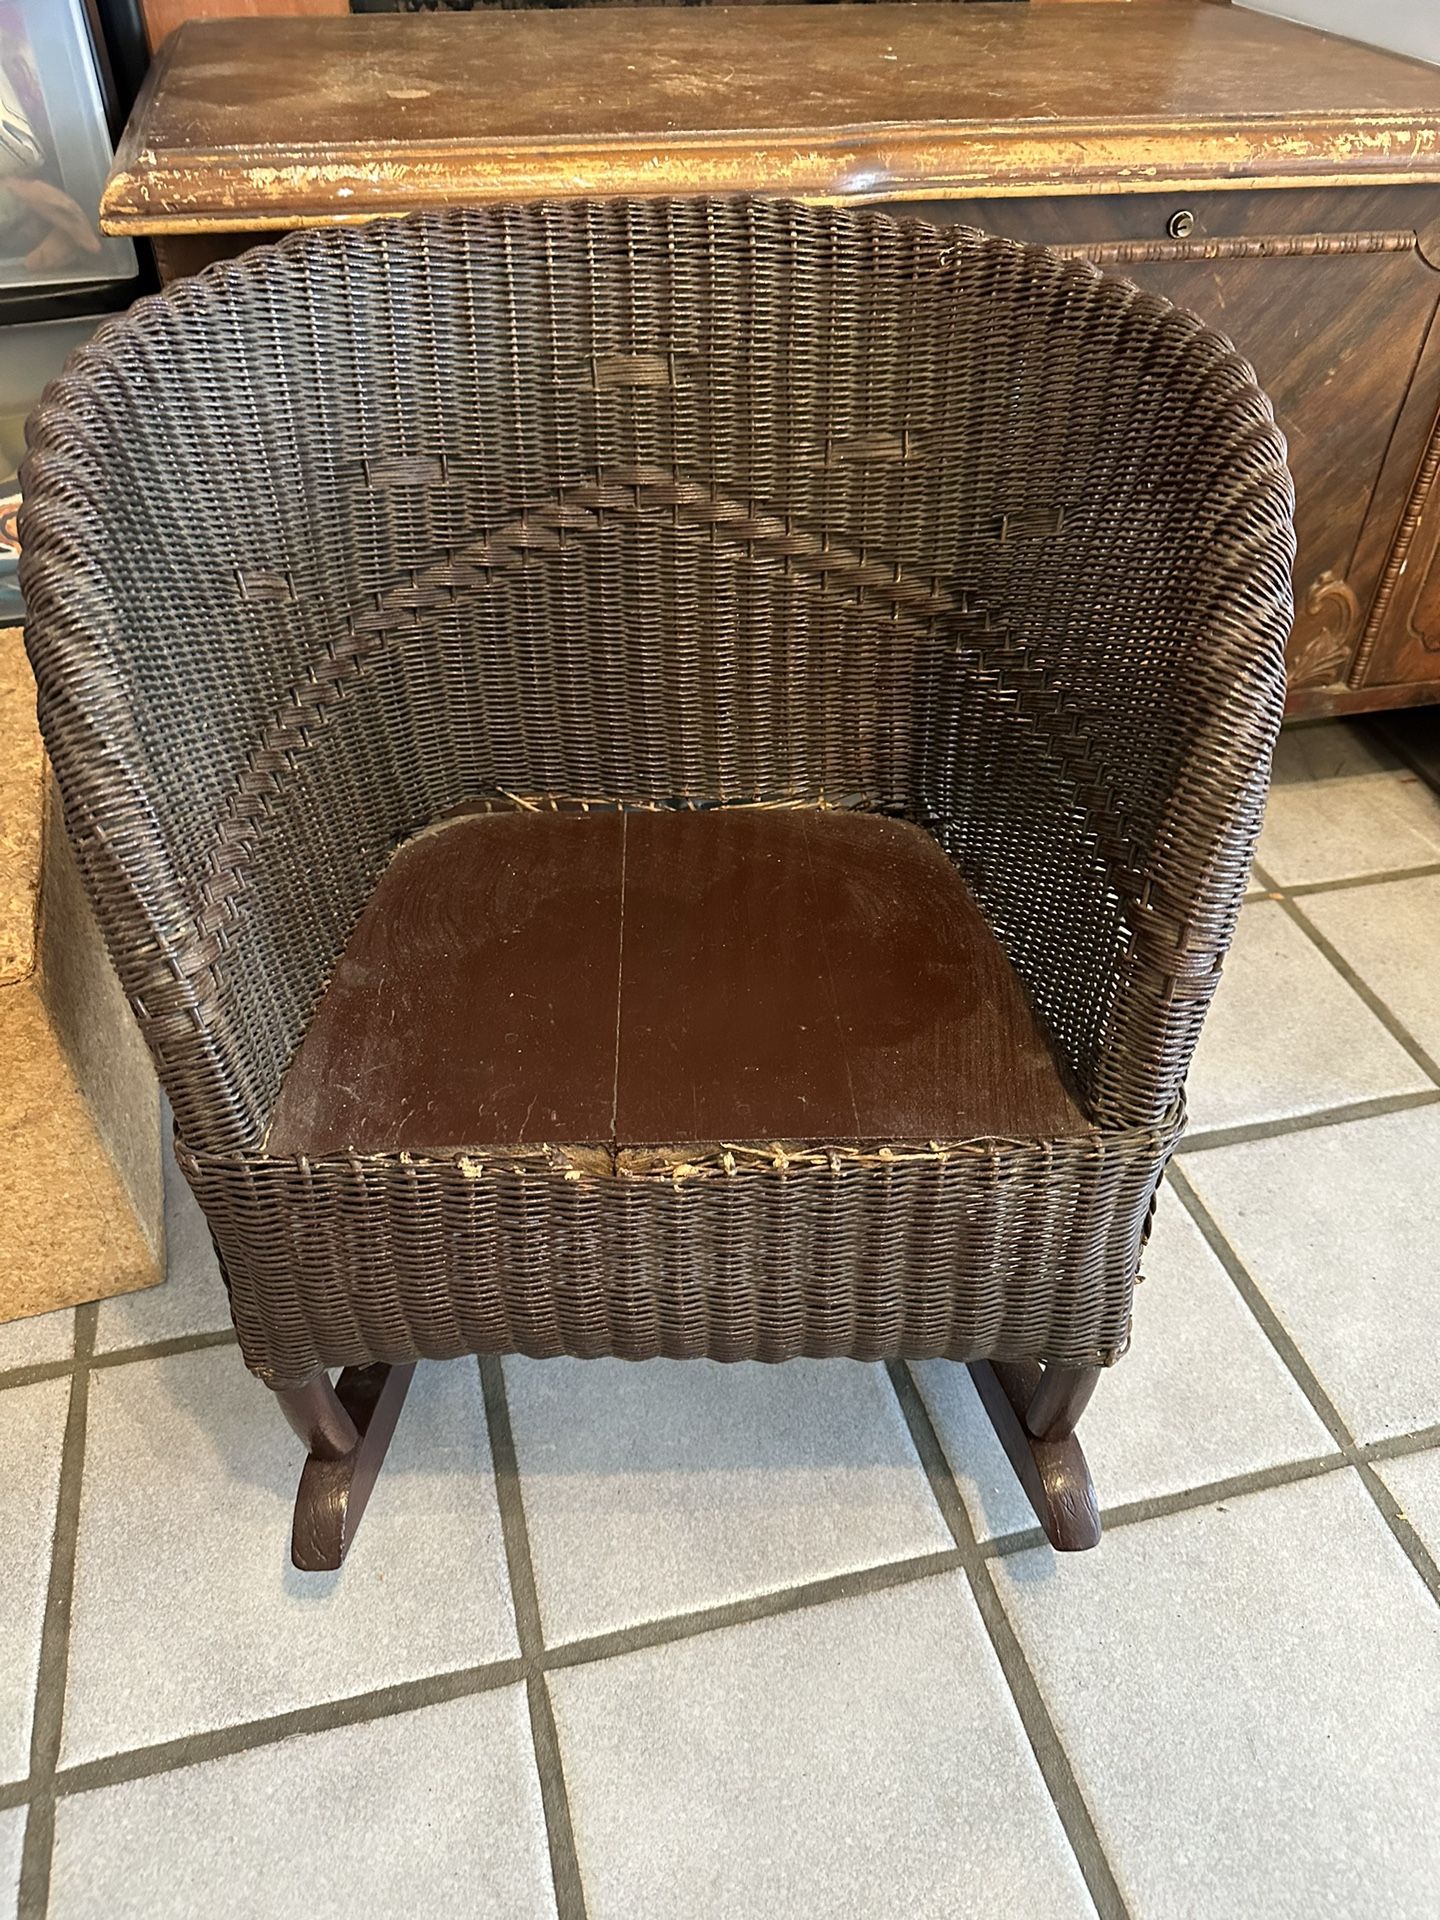 Child’s Vintage Wicker Rocking Chair Make Offer